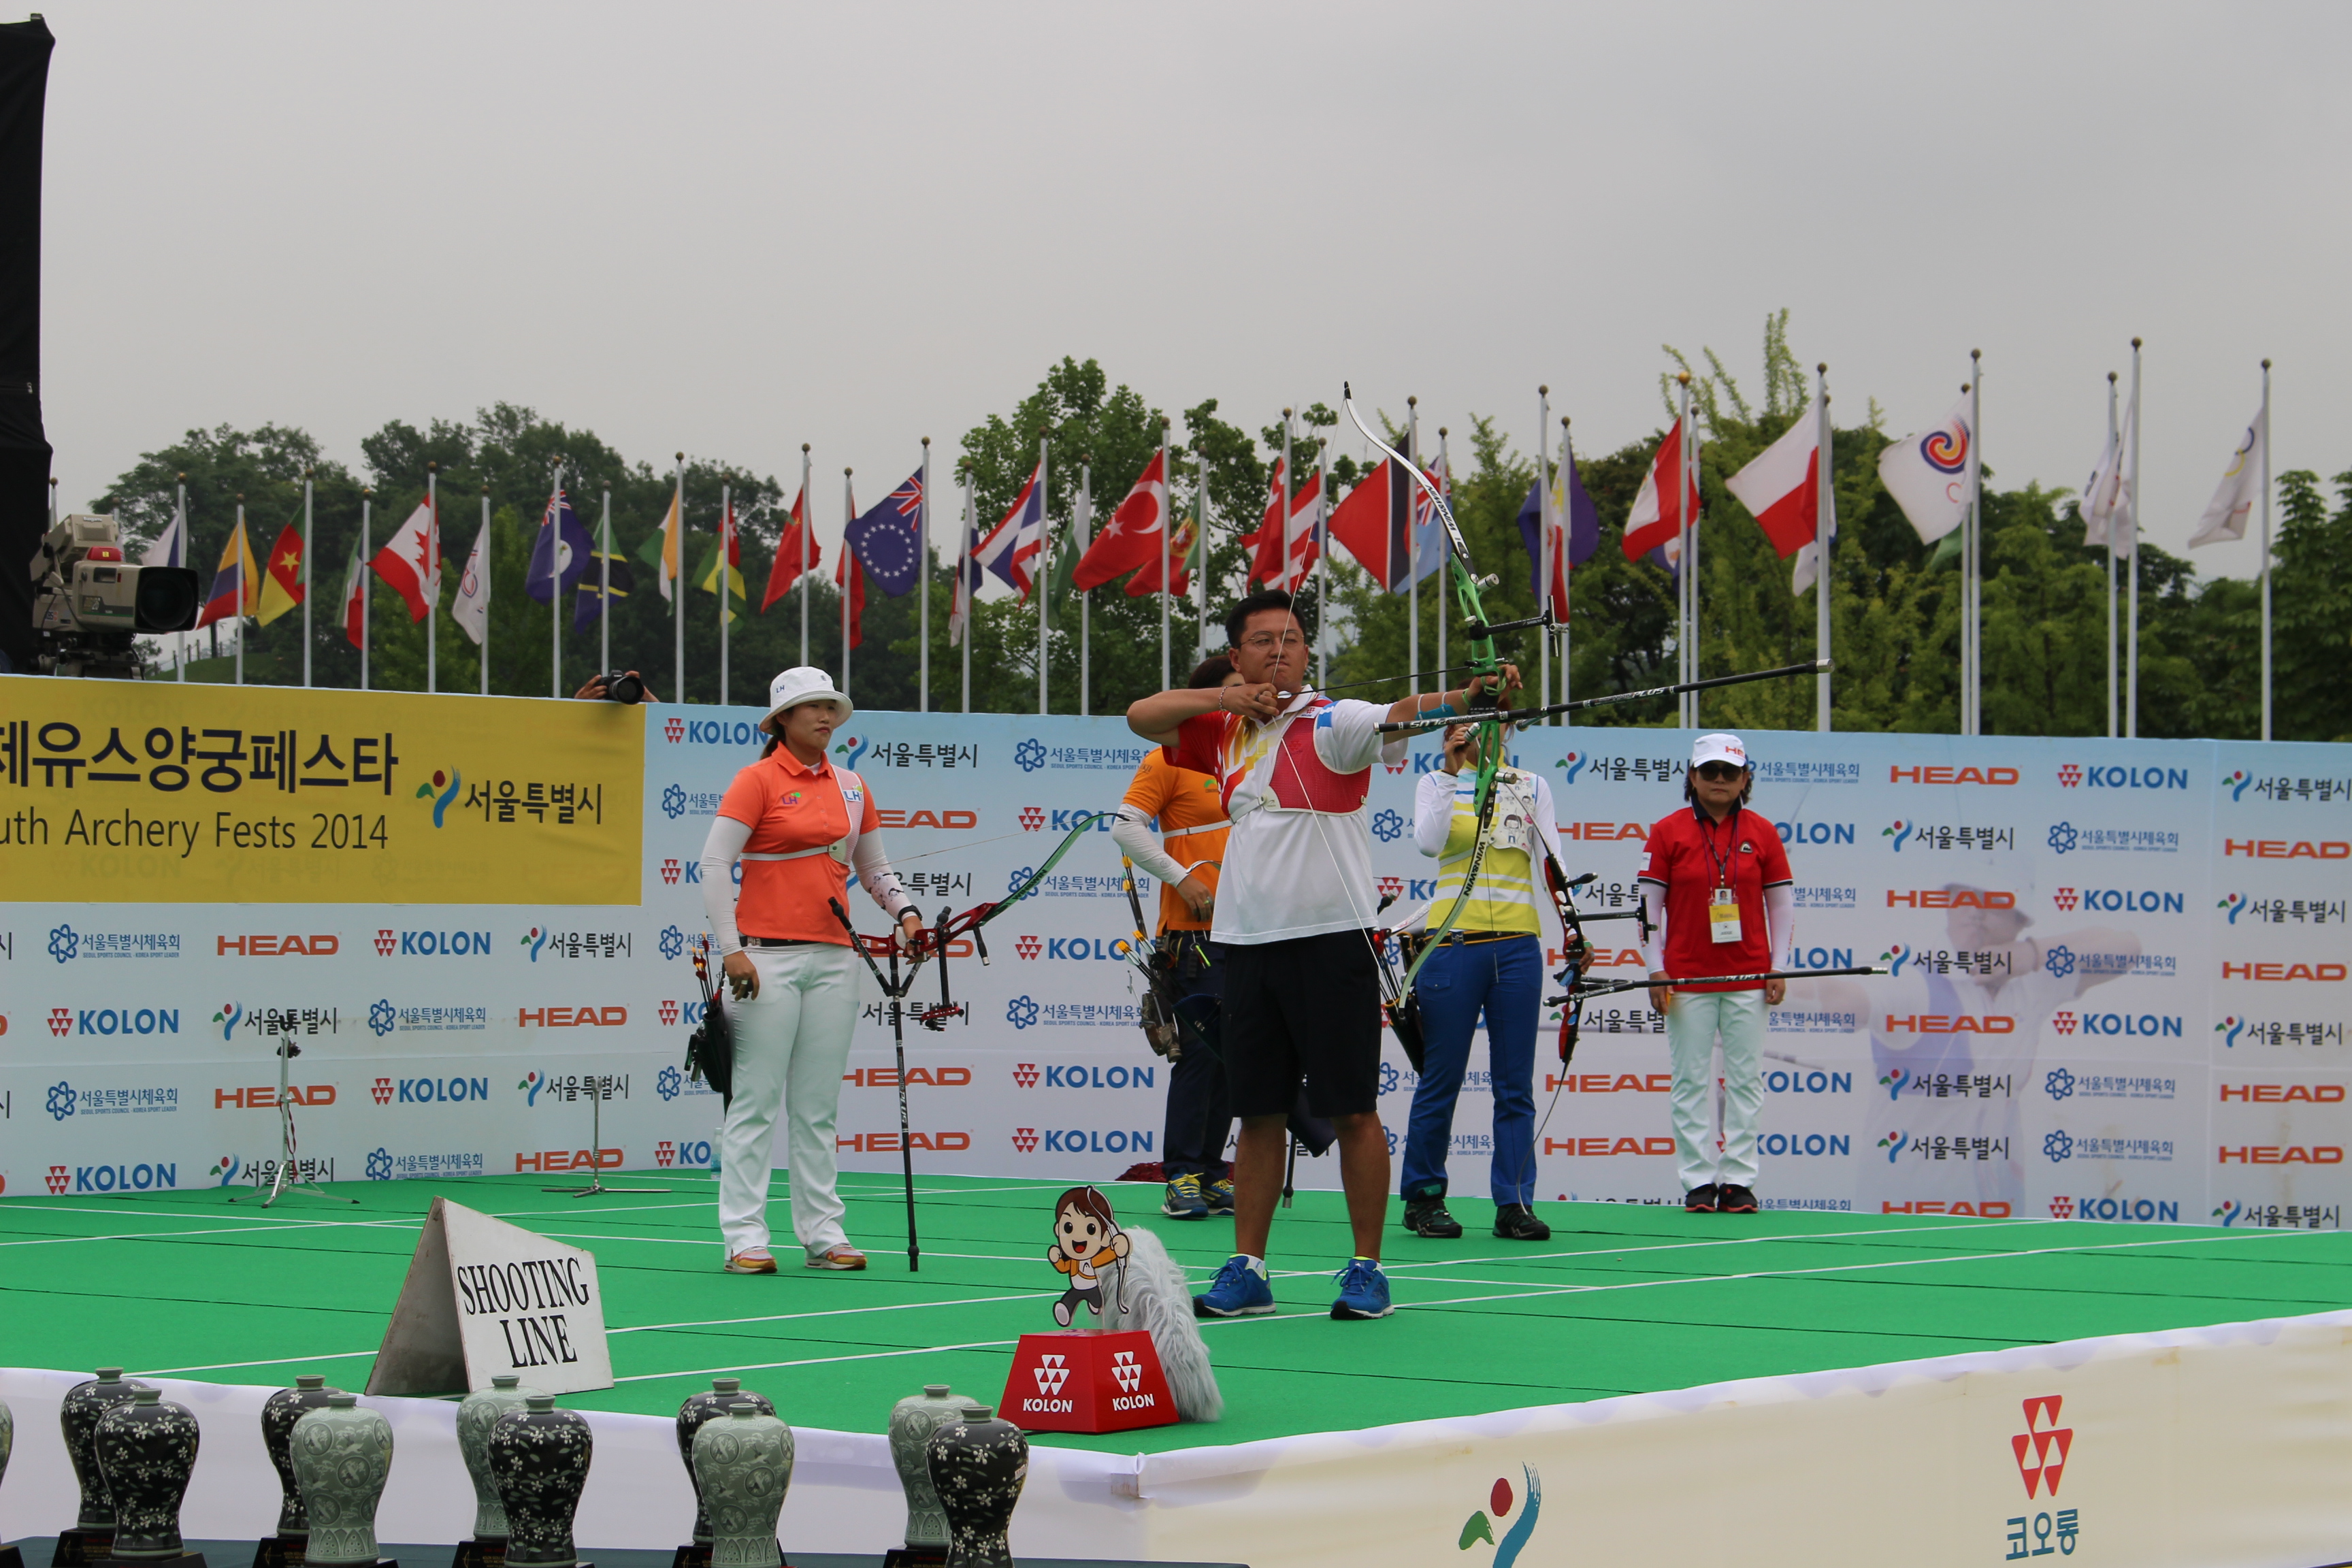 코오롱 양궁팀 이창환 선수의 이벤트 경기 모습 - 이벤트 경기는 임동현, 최현주 선수와 이창환, 전성은 선수의 혼성대결로 펼쳐졌다. 